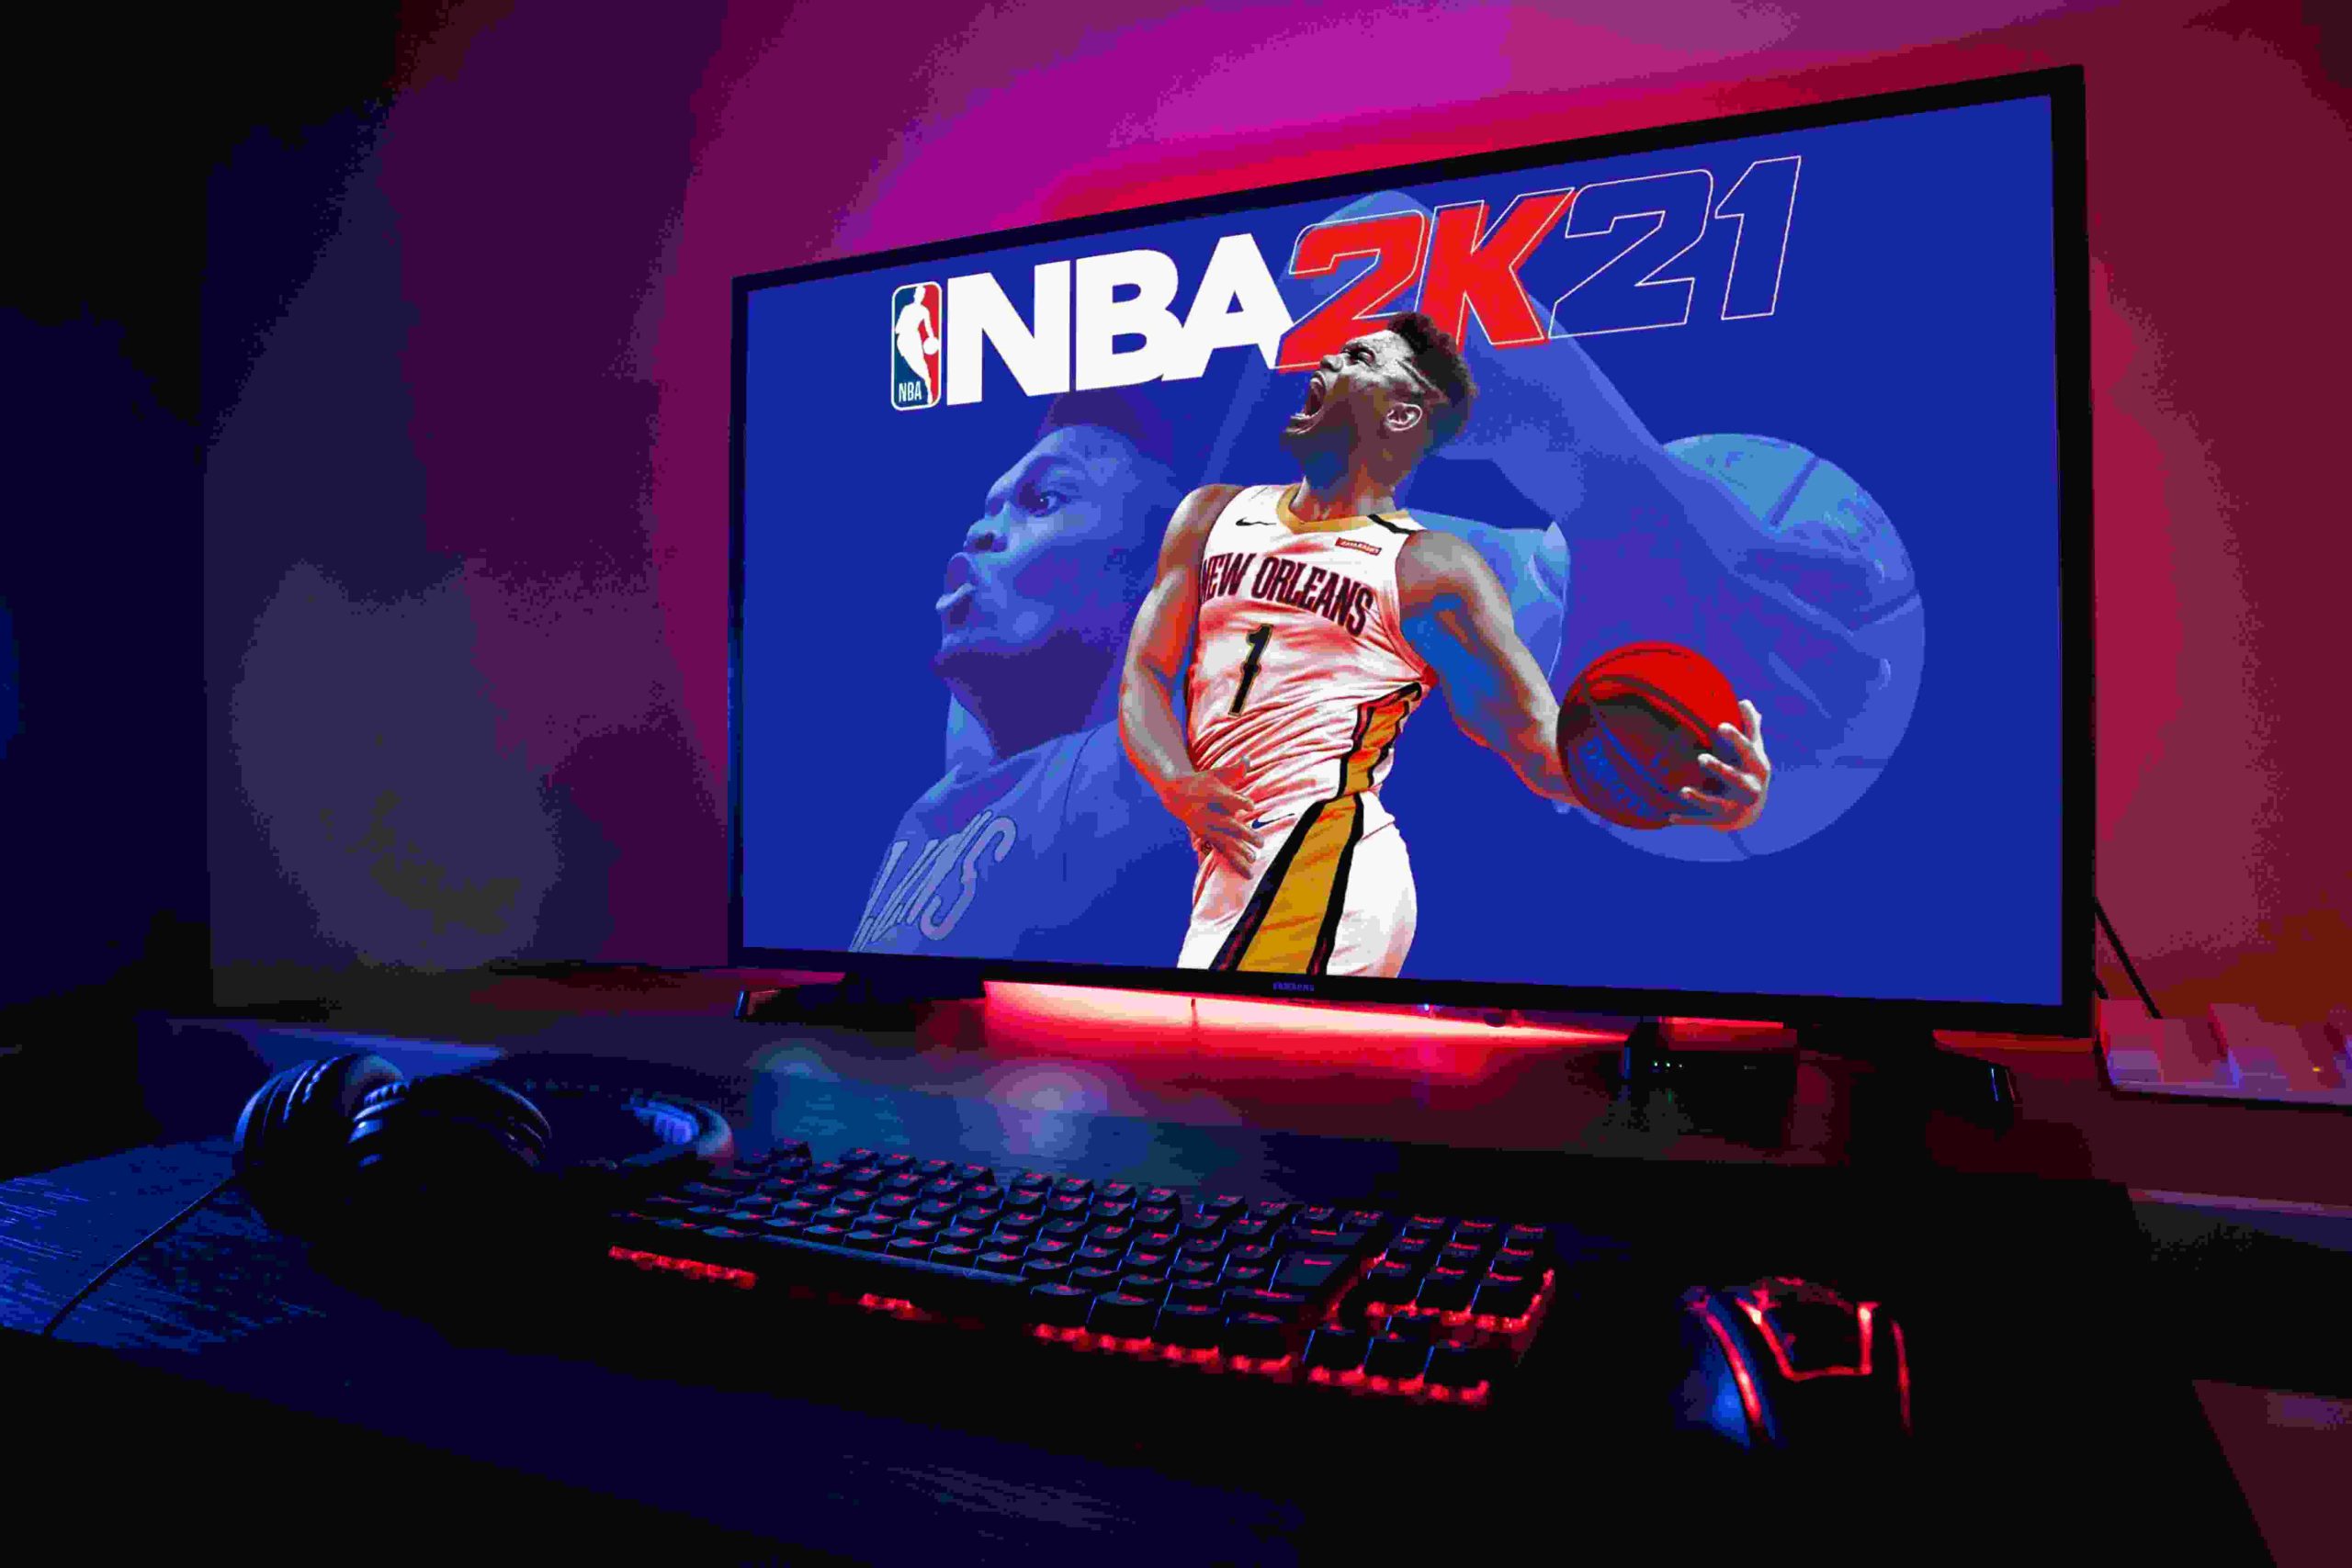 NBA streams